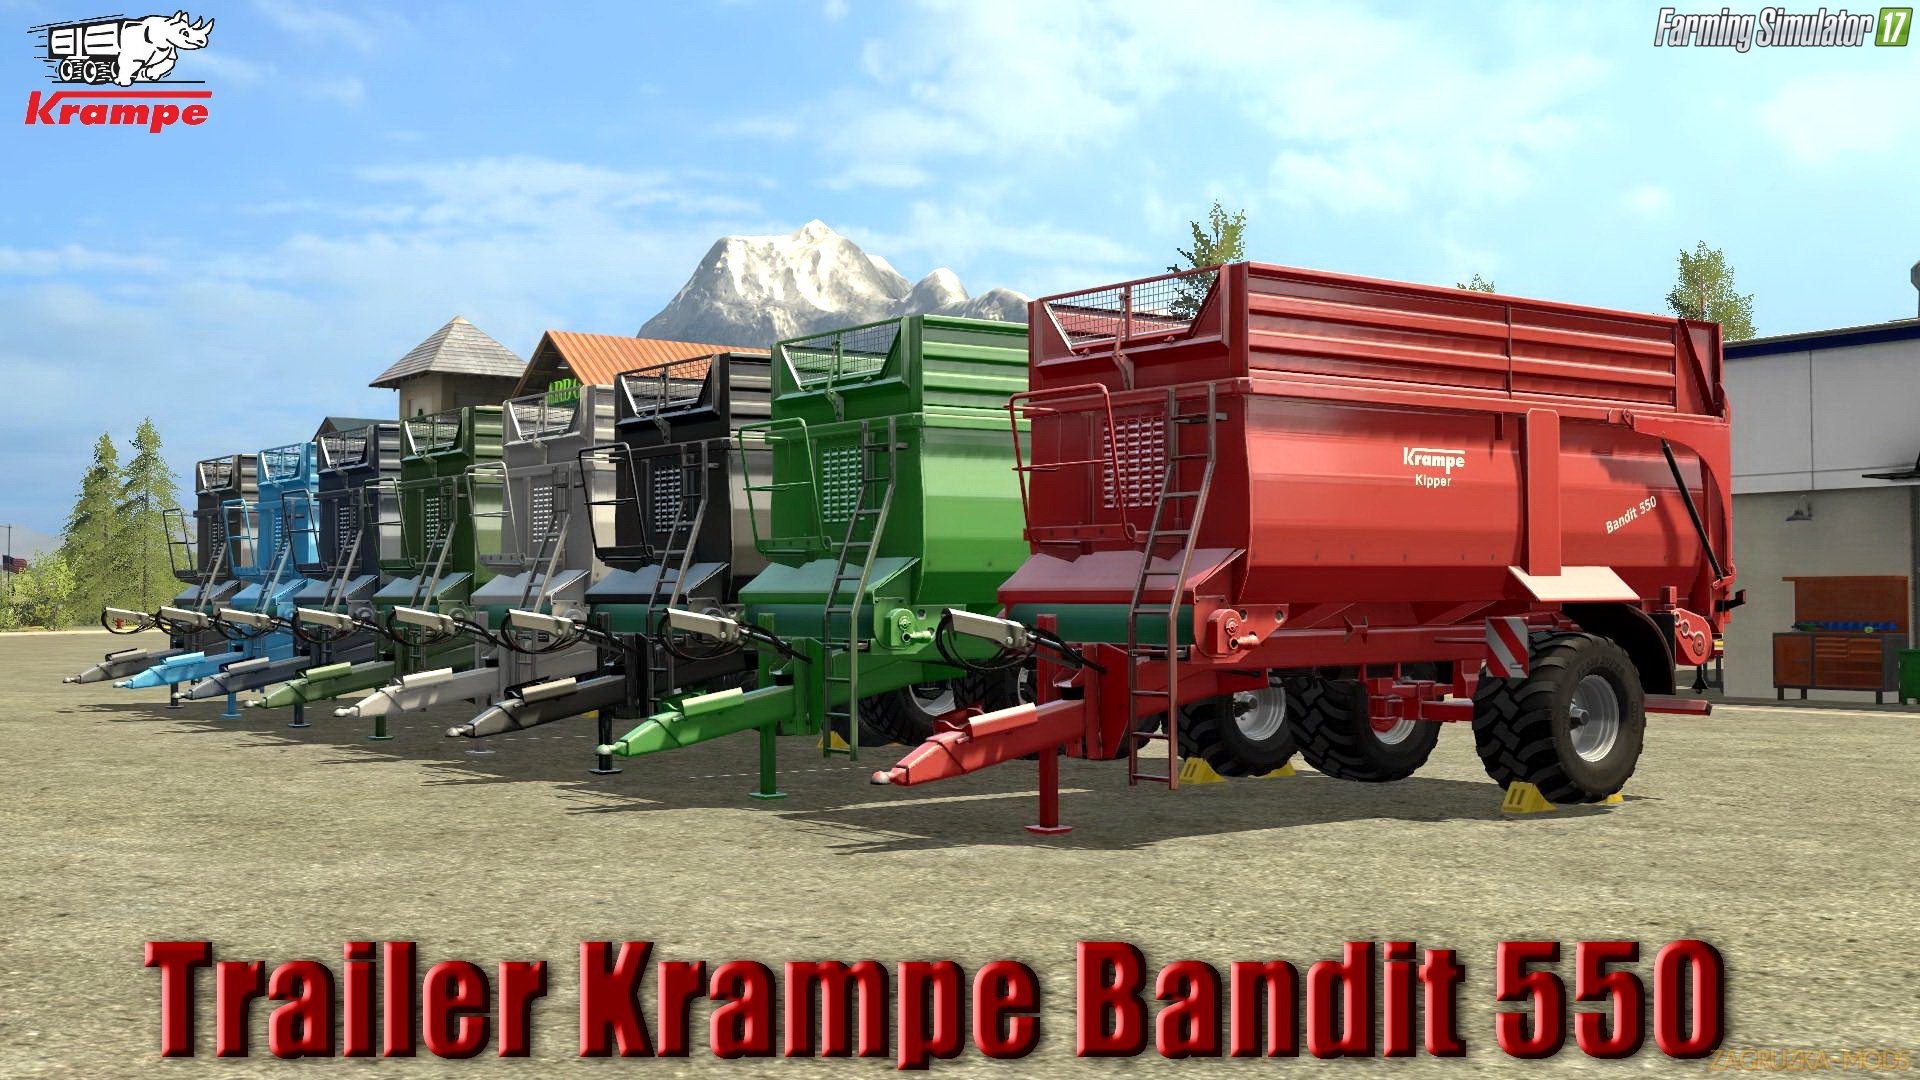 Krampe Bandit 550 v1.0 for FS 17